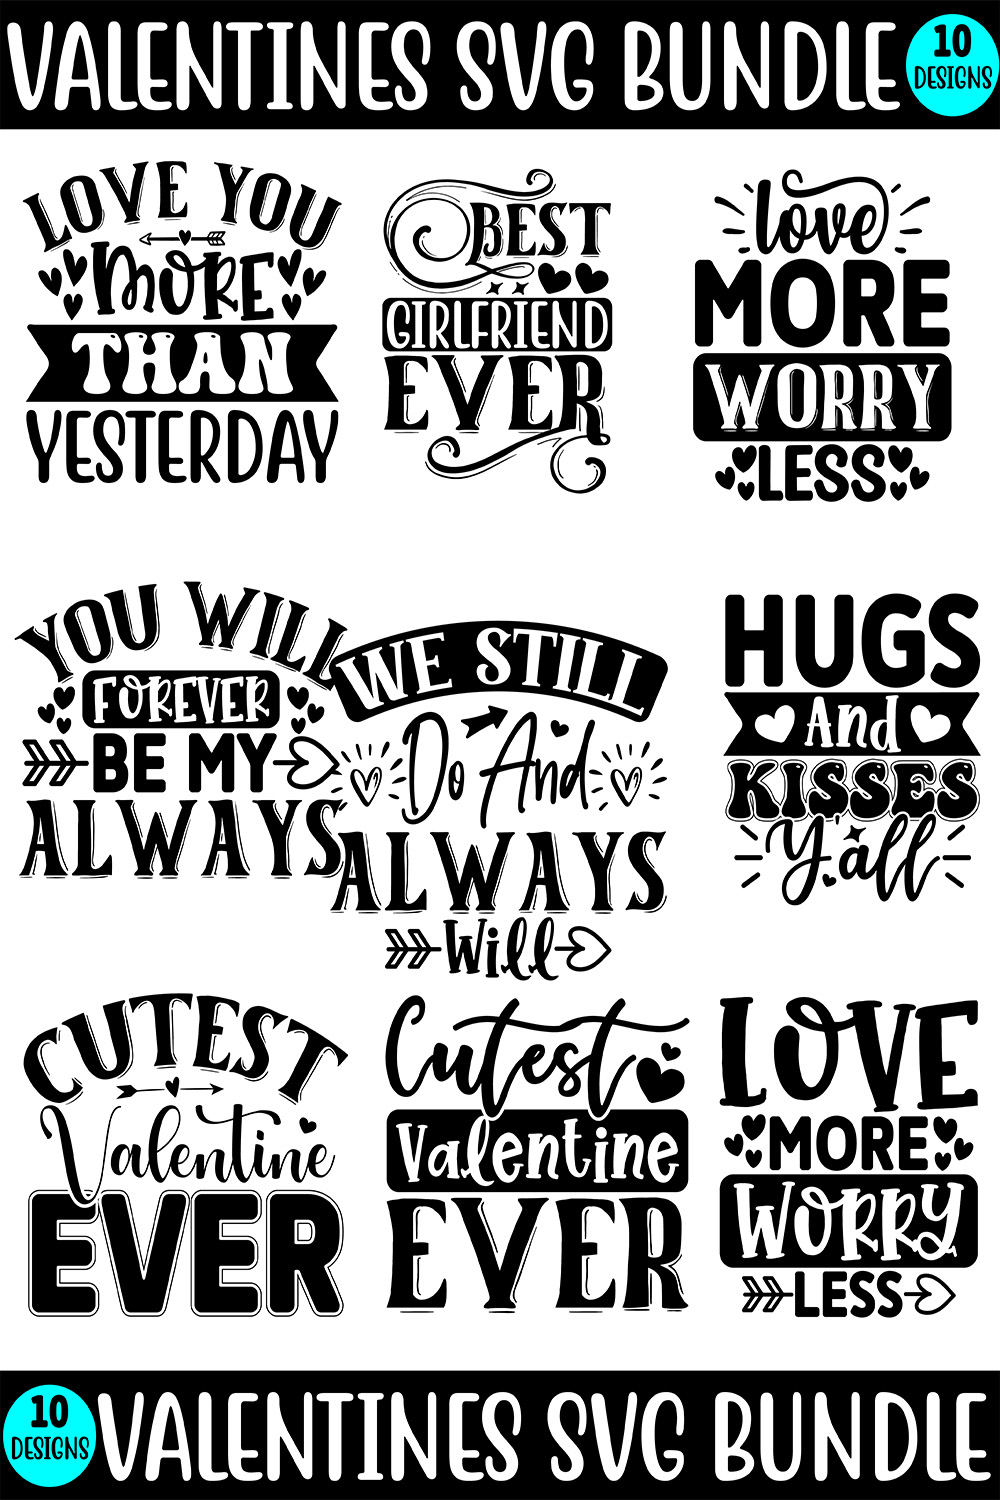 Valentines Typography SVG Design Bundle pinterest image.